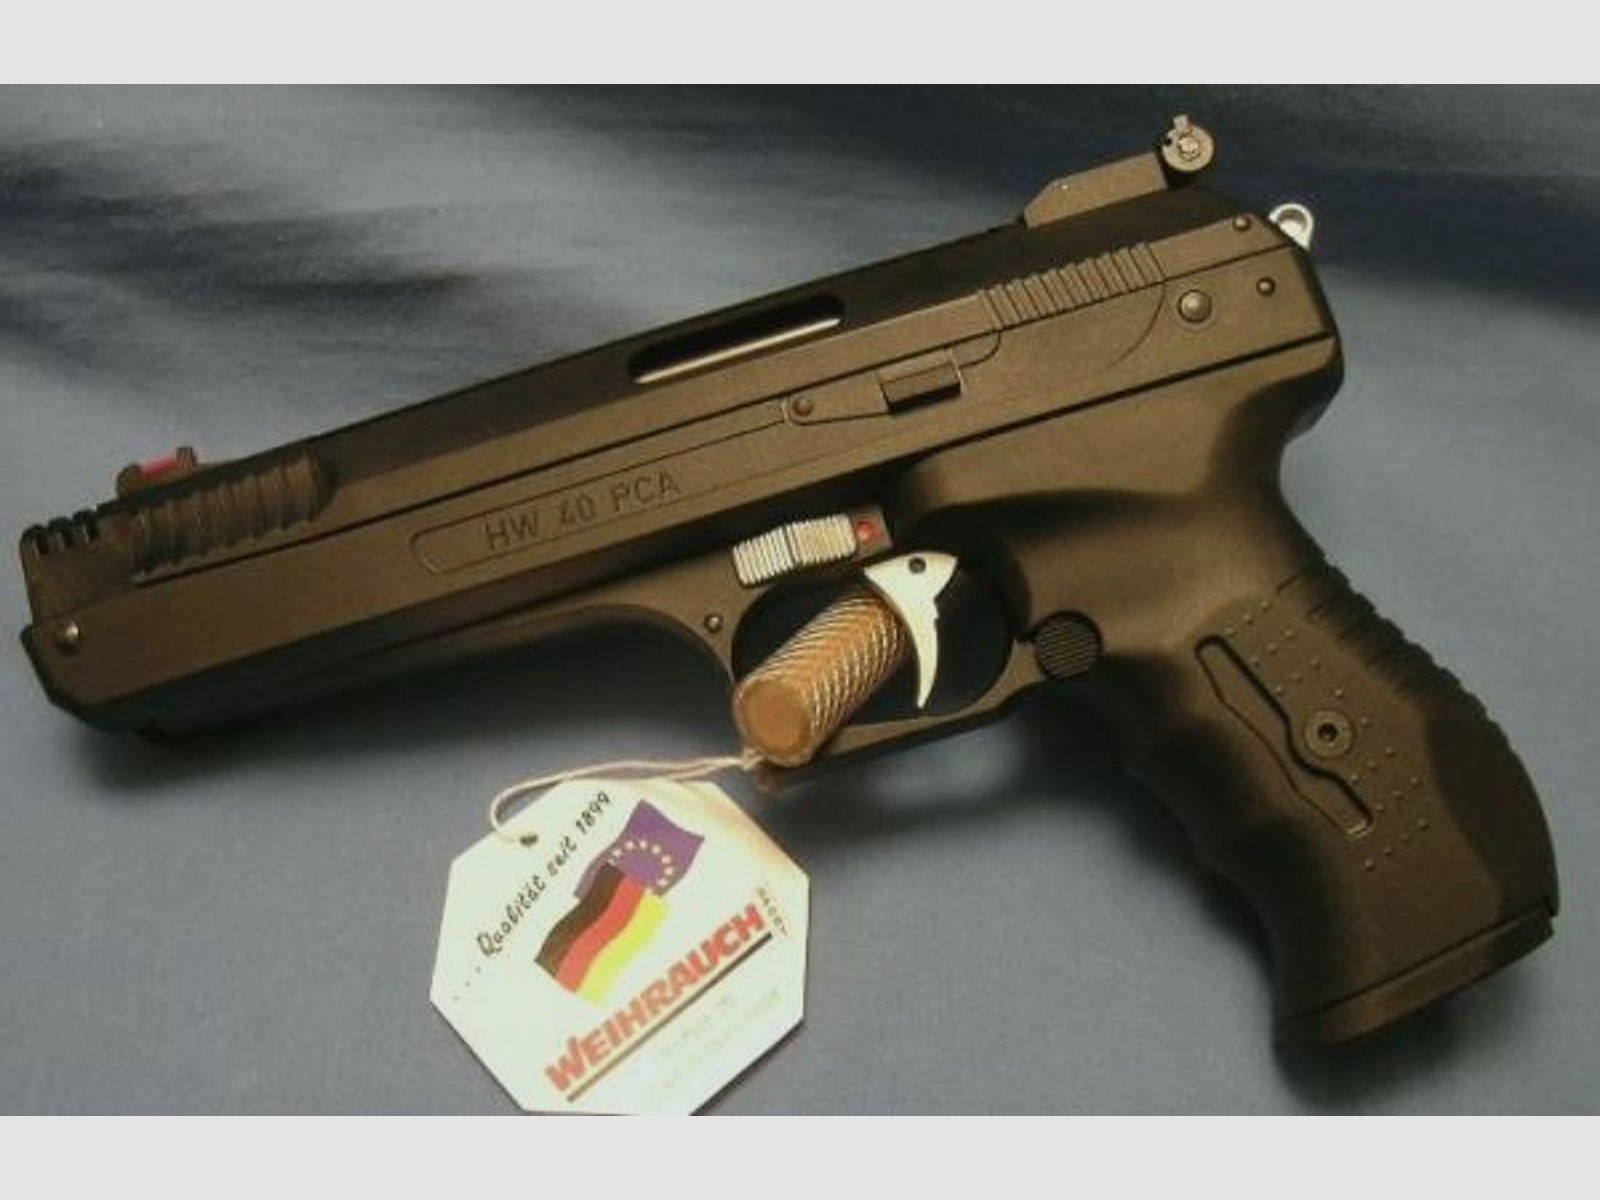 WEIHRAUCH Druckluftwaffe Pistole HW40 PCA Kal. 4,5mm